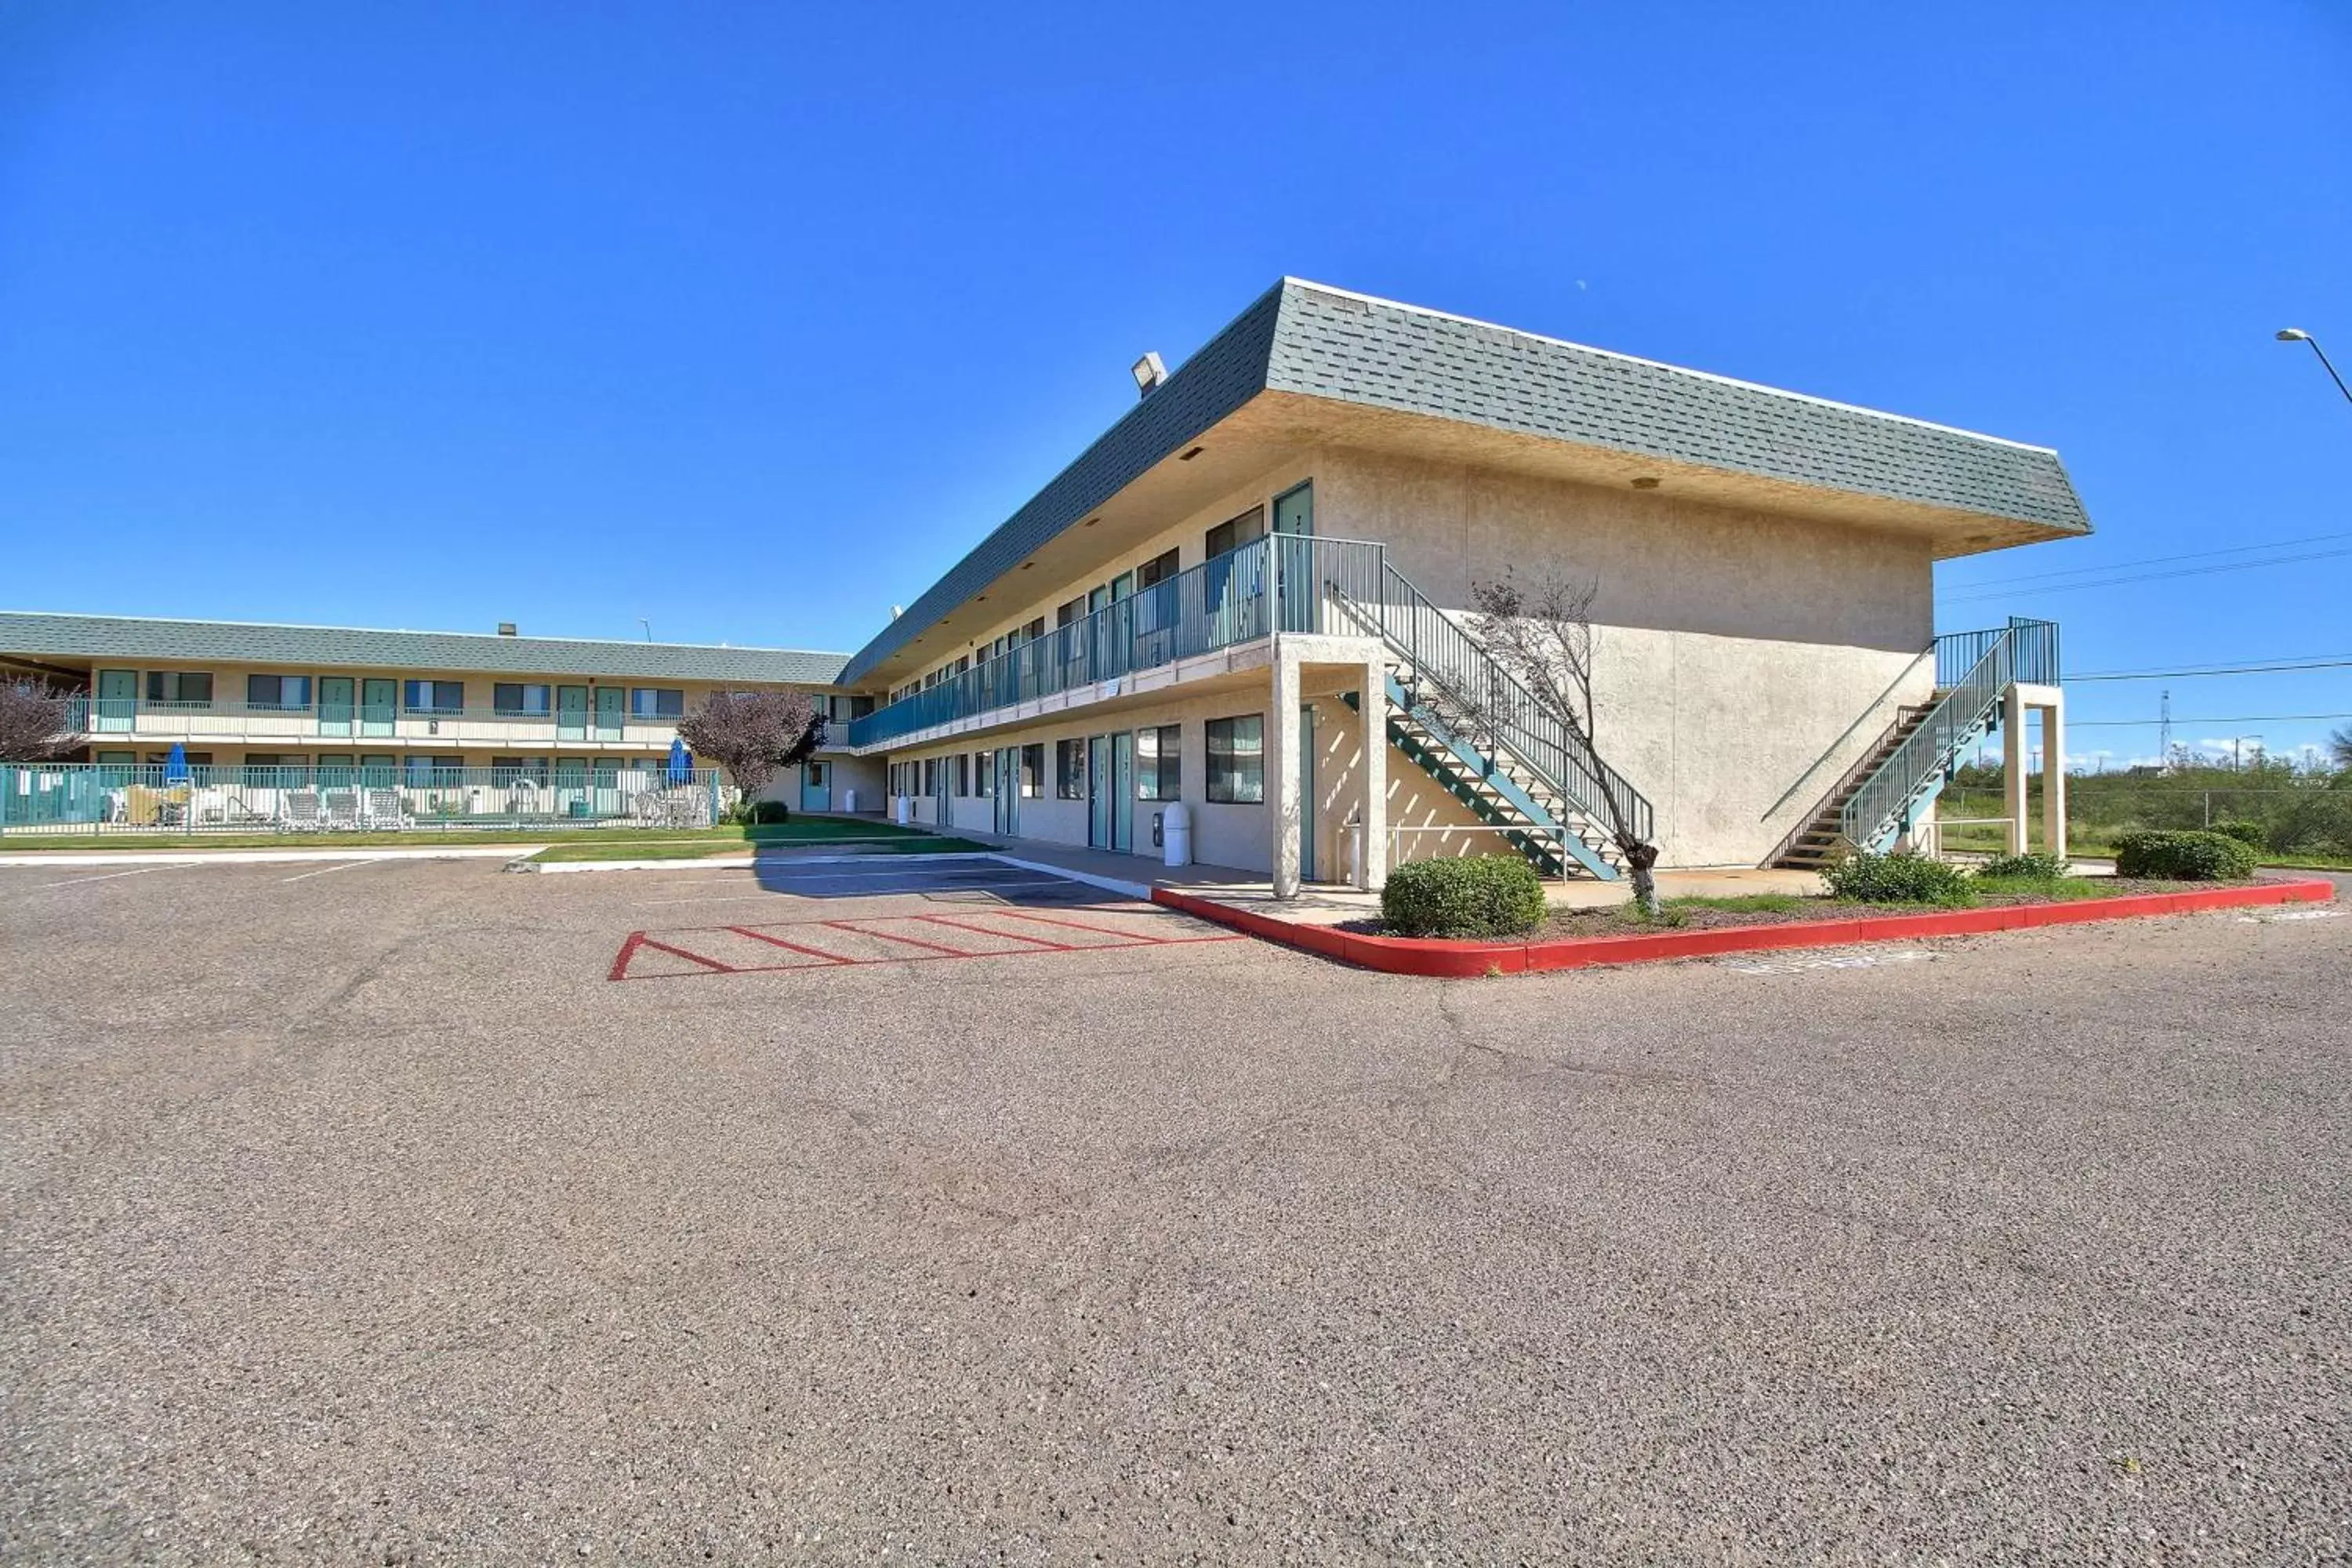 Property building, Facade/Entrance in Motel 6-Douglas, AZ